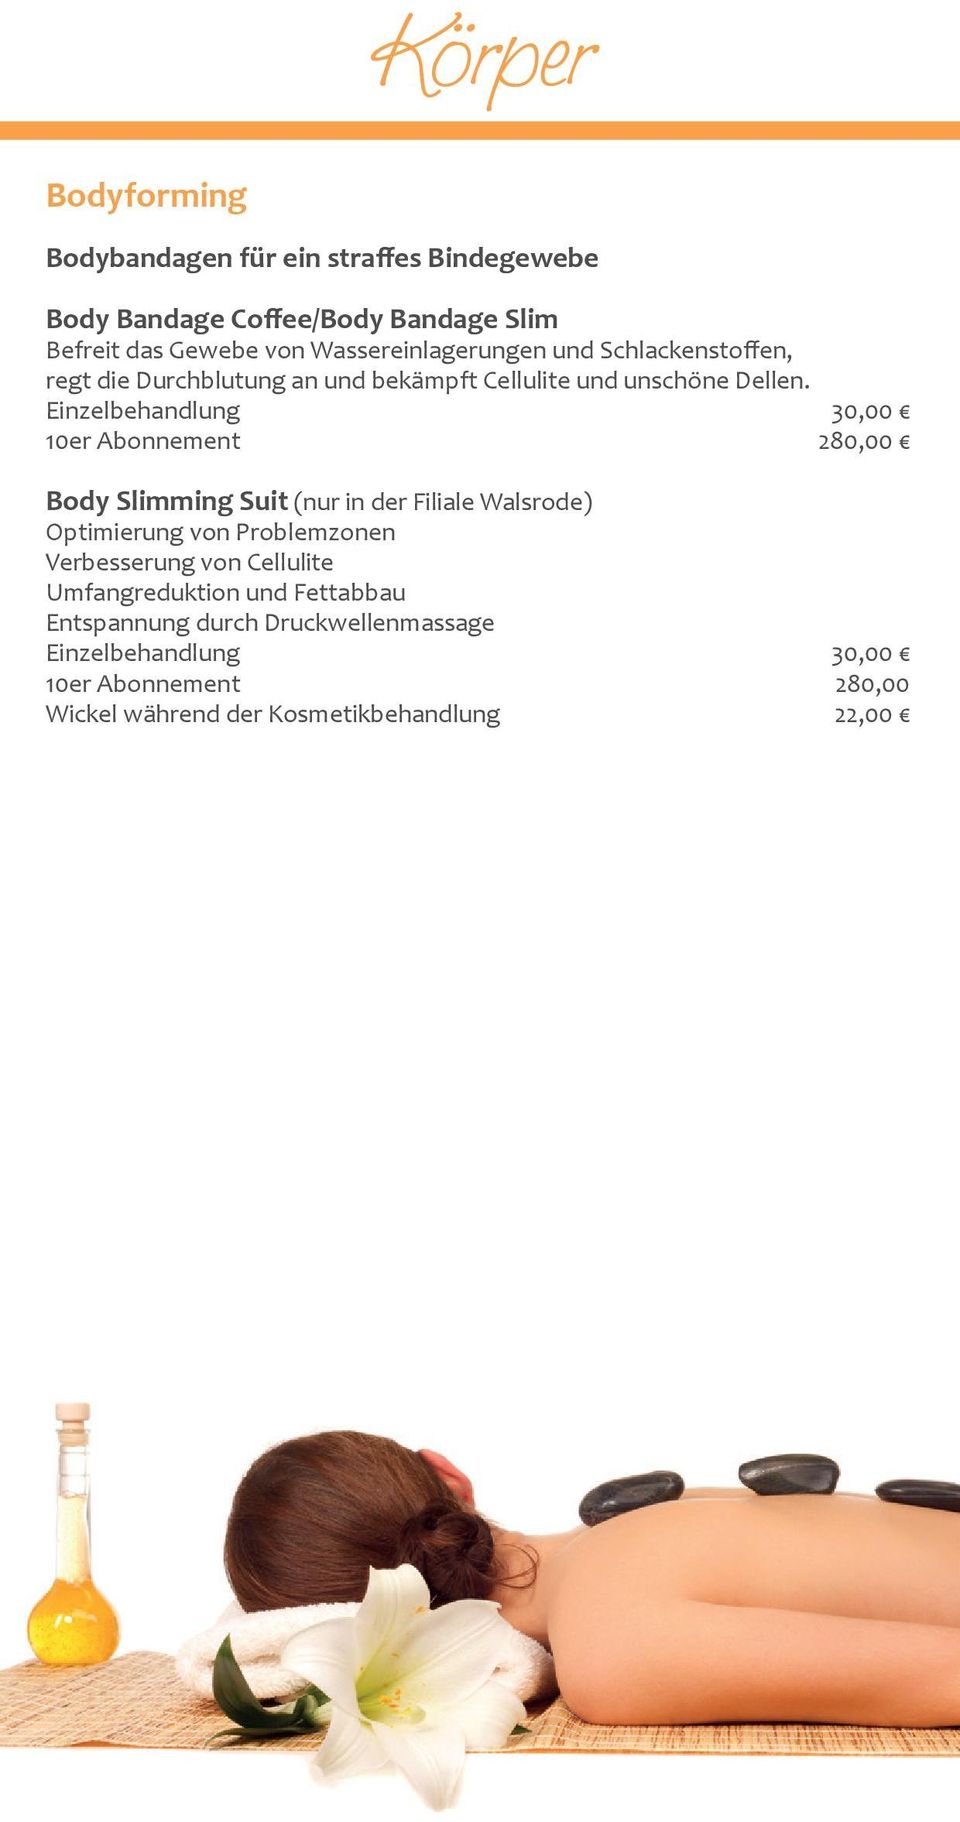 Einzelbehandlung 30,00 10er Abonnement 280,00 Body Slimming Suit (nur in der Filiale Walsrode) Optimierung von Problemzonen